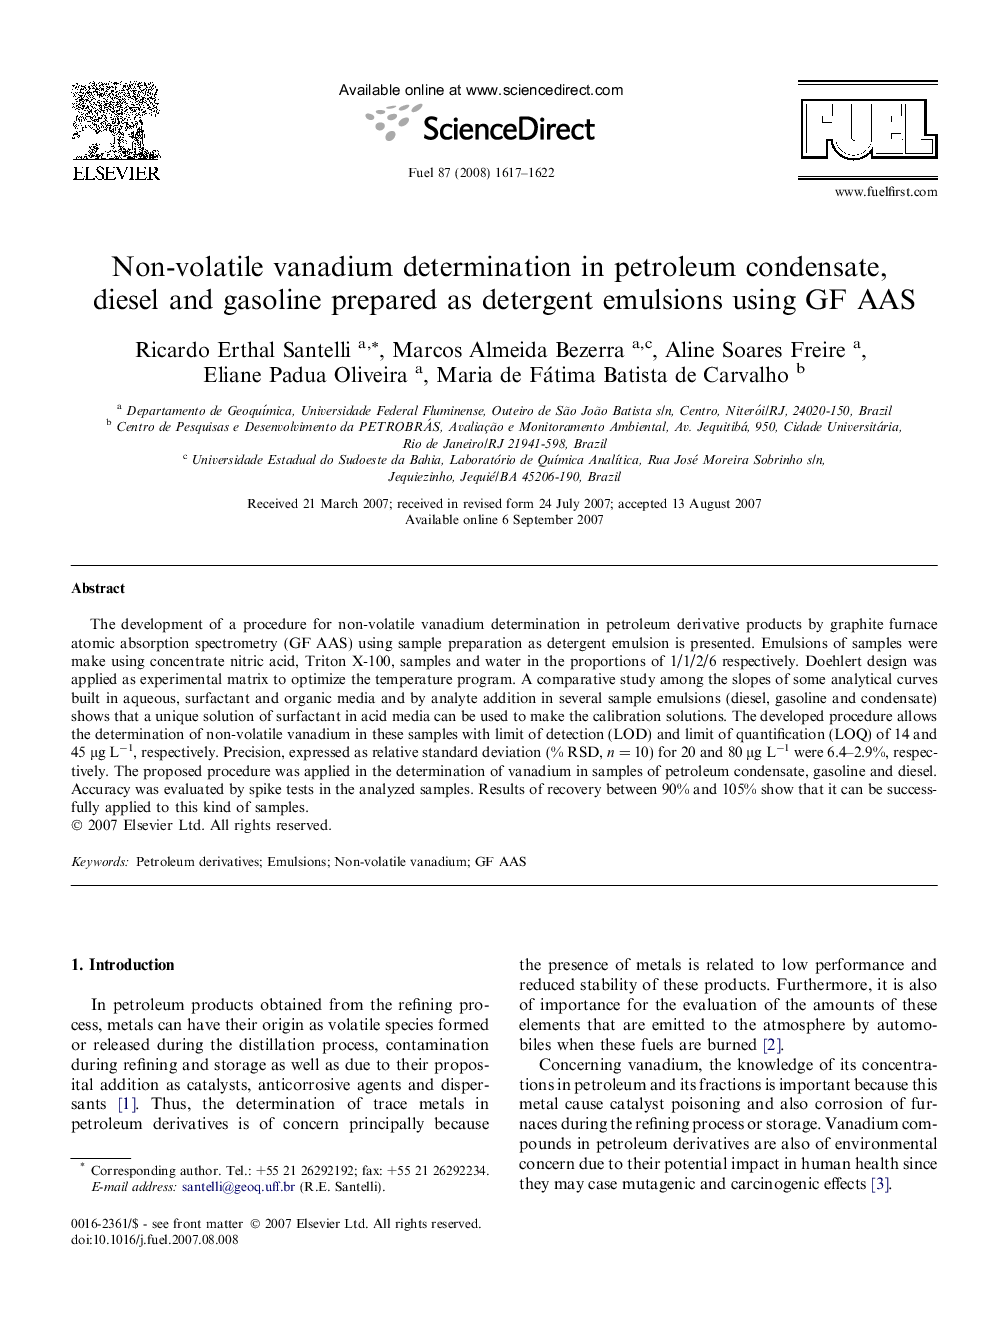 Non-volatile vanadium determination in petroleum condensate, diesel and gasoline prepared as detergent emulsions using GF AAS